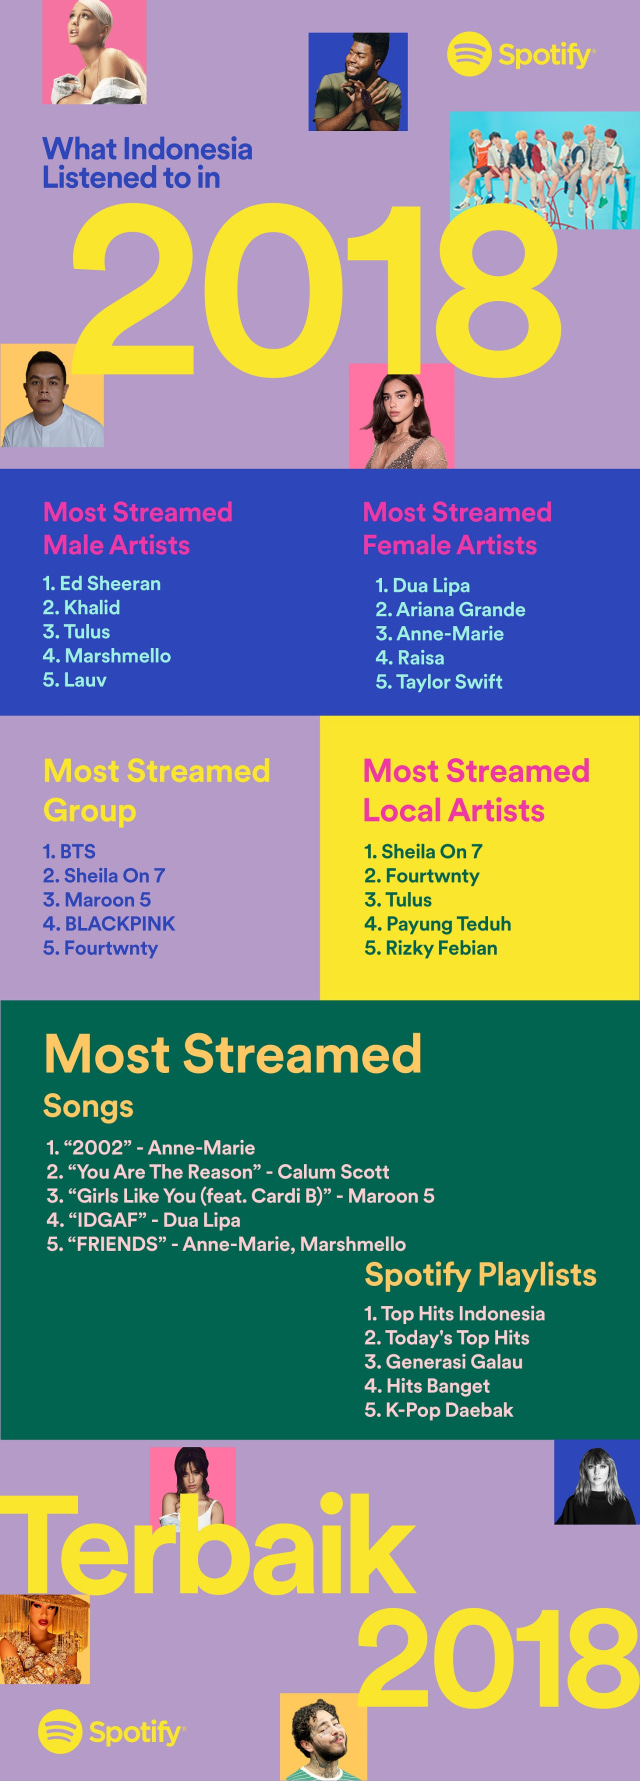 Daftar musisi dan lagu paling sering diputar di Spotify Indonesia. (Foto: Spotify)